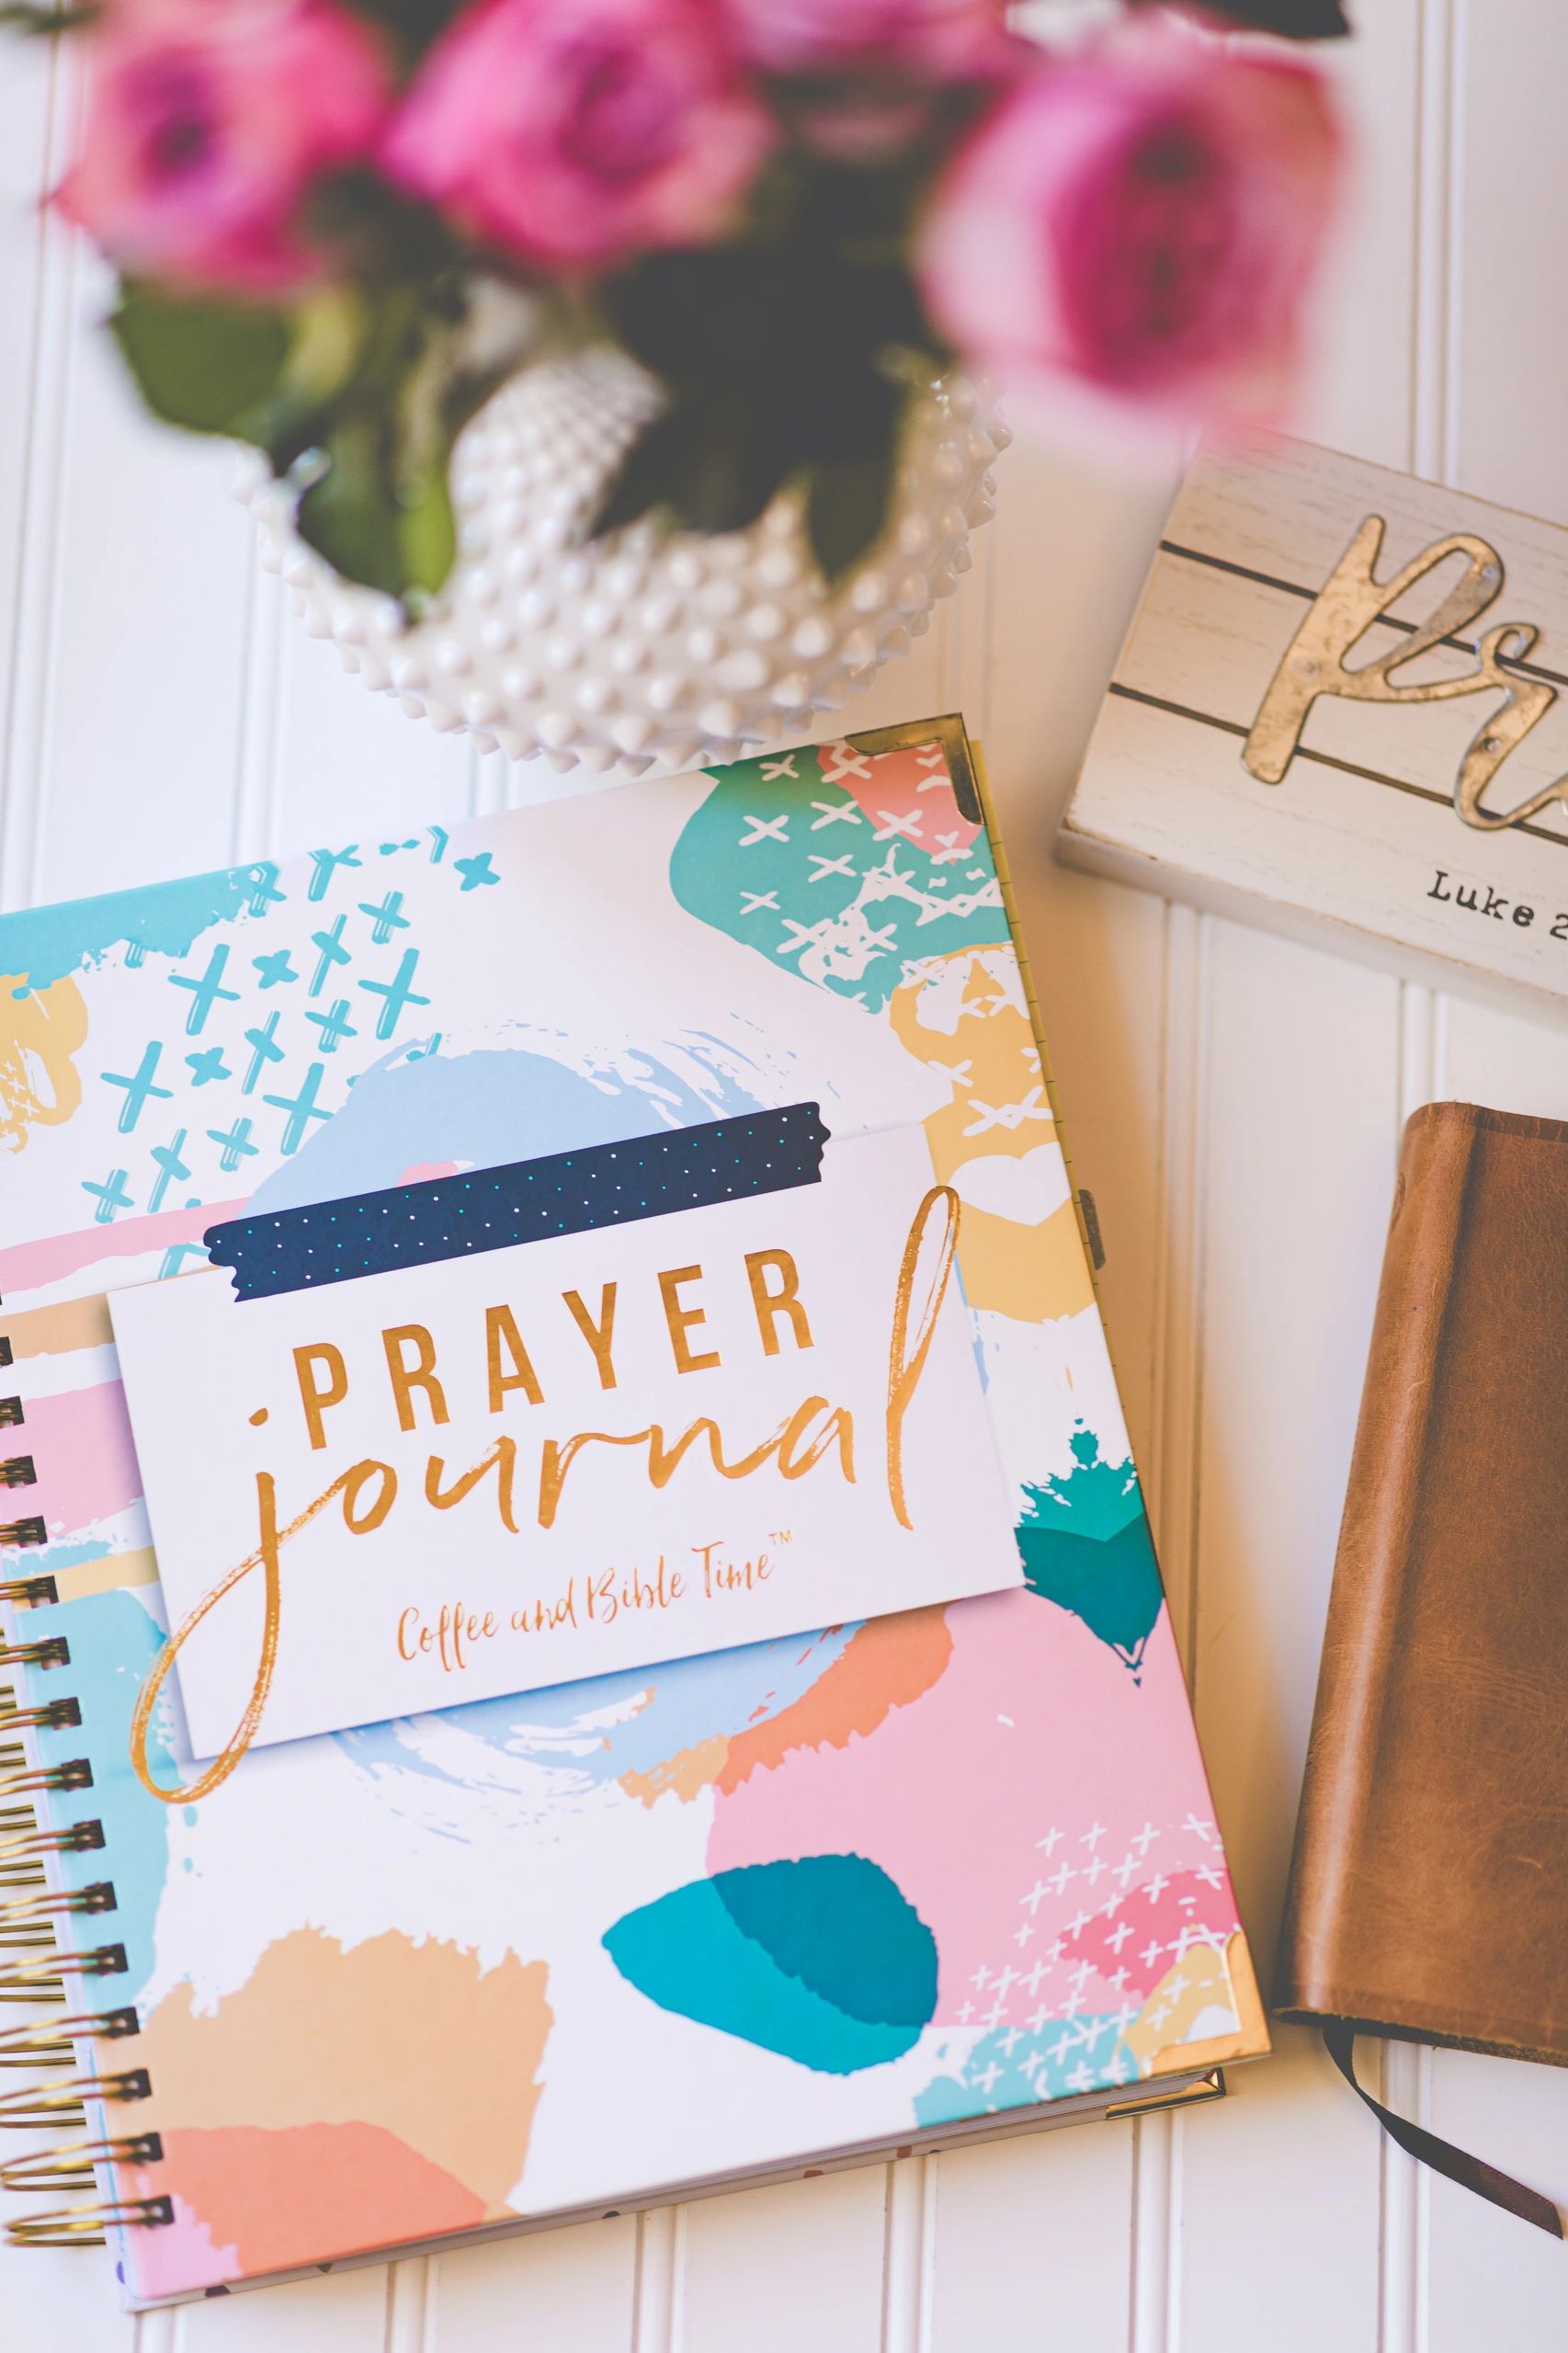 My Top 5 Prayer Essentials